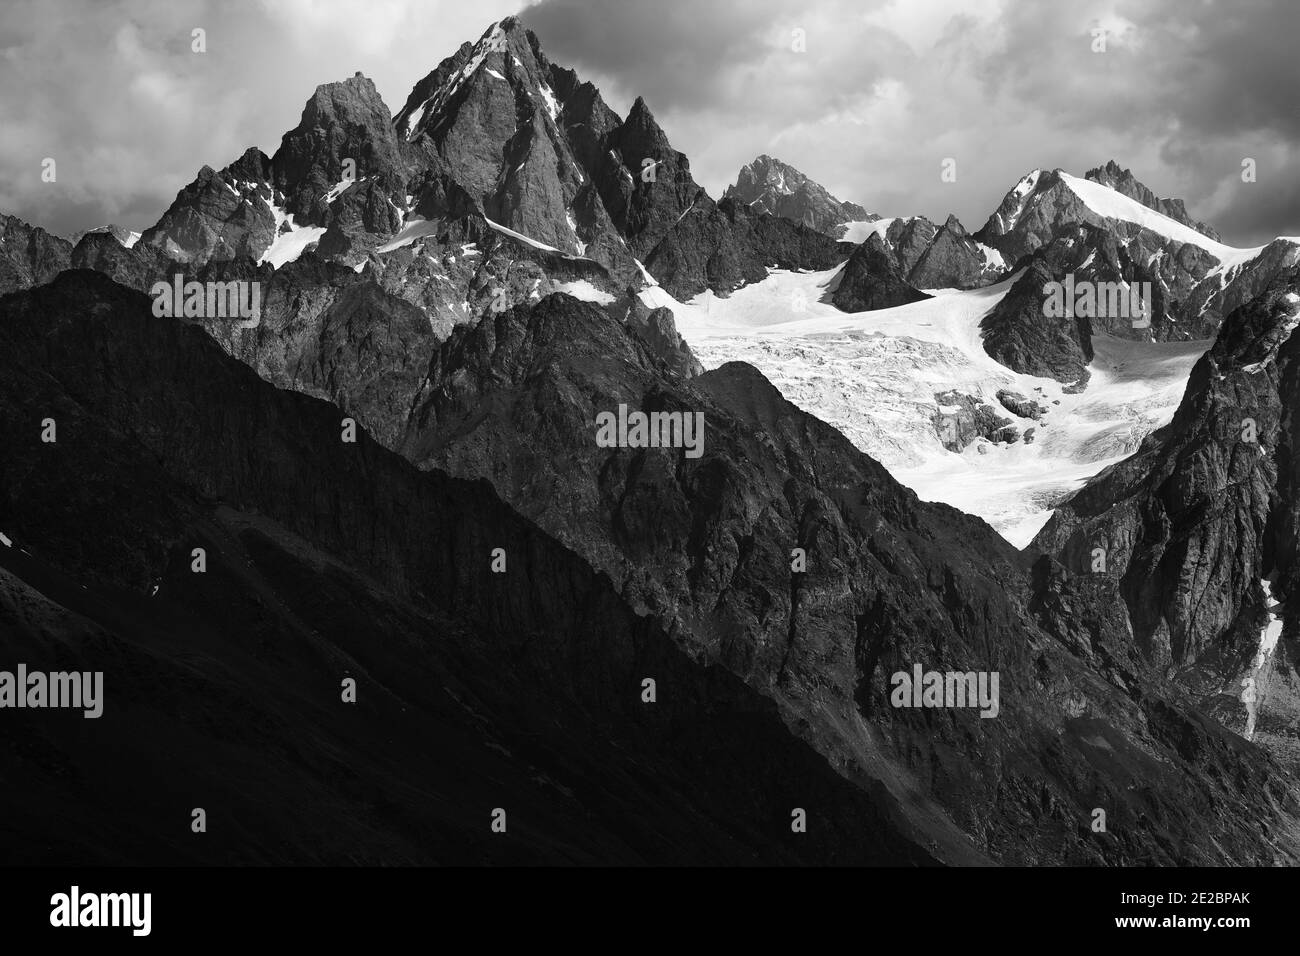 Hautes montagnes rocheuses avec glacier dans les nuages de tempête avant la pluie. Montagnes du Caucase. Géorgie, région de Svanetia en été. Emplacement distant. Noir et blanc Banque D'Images